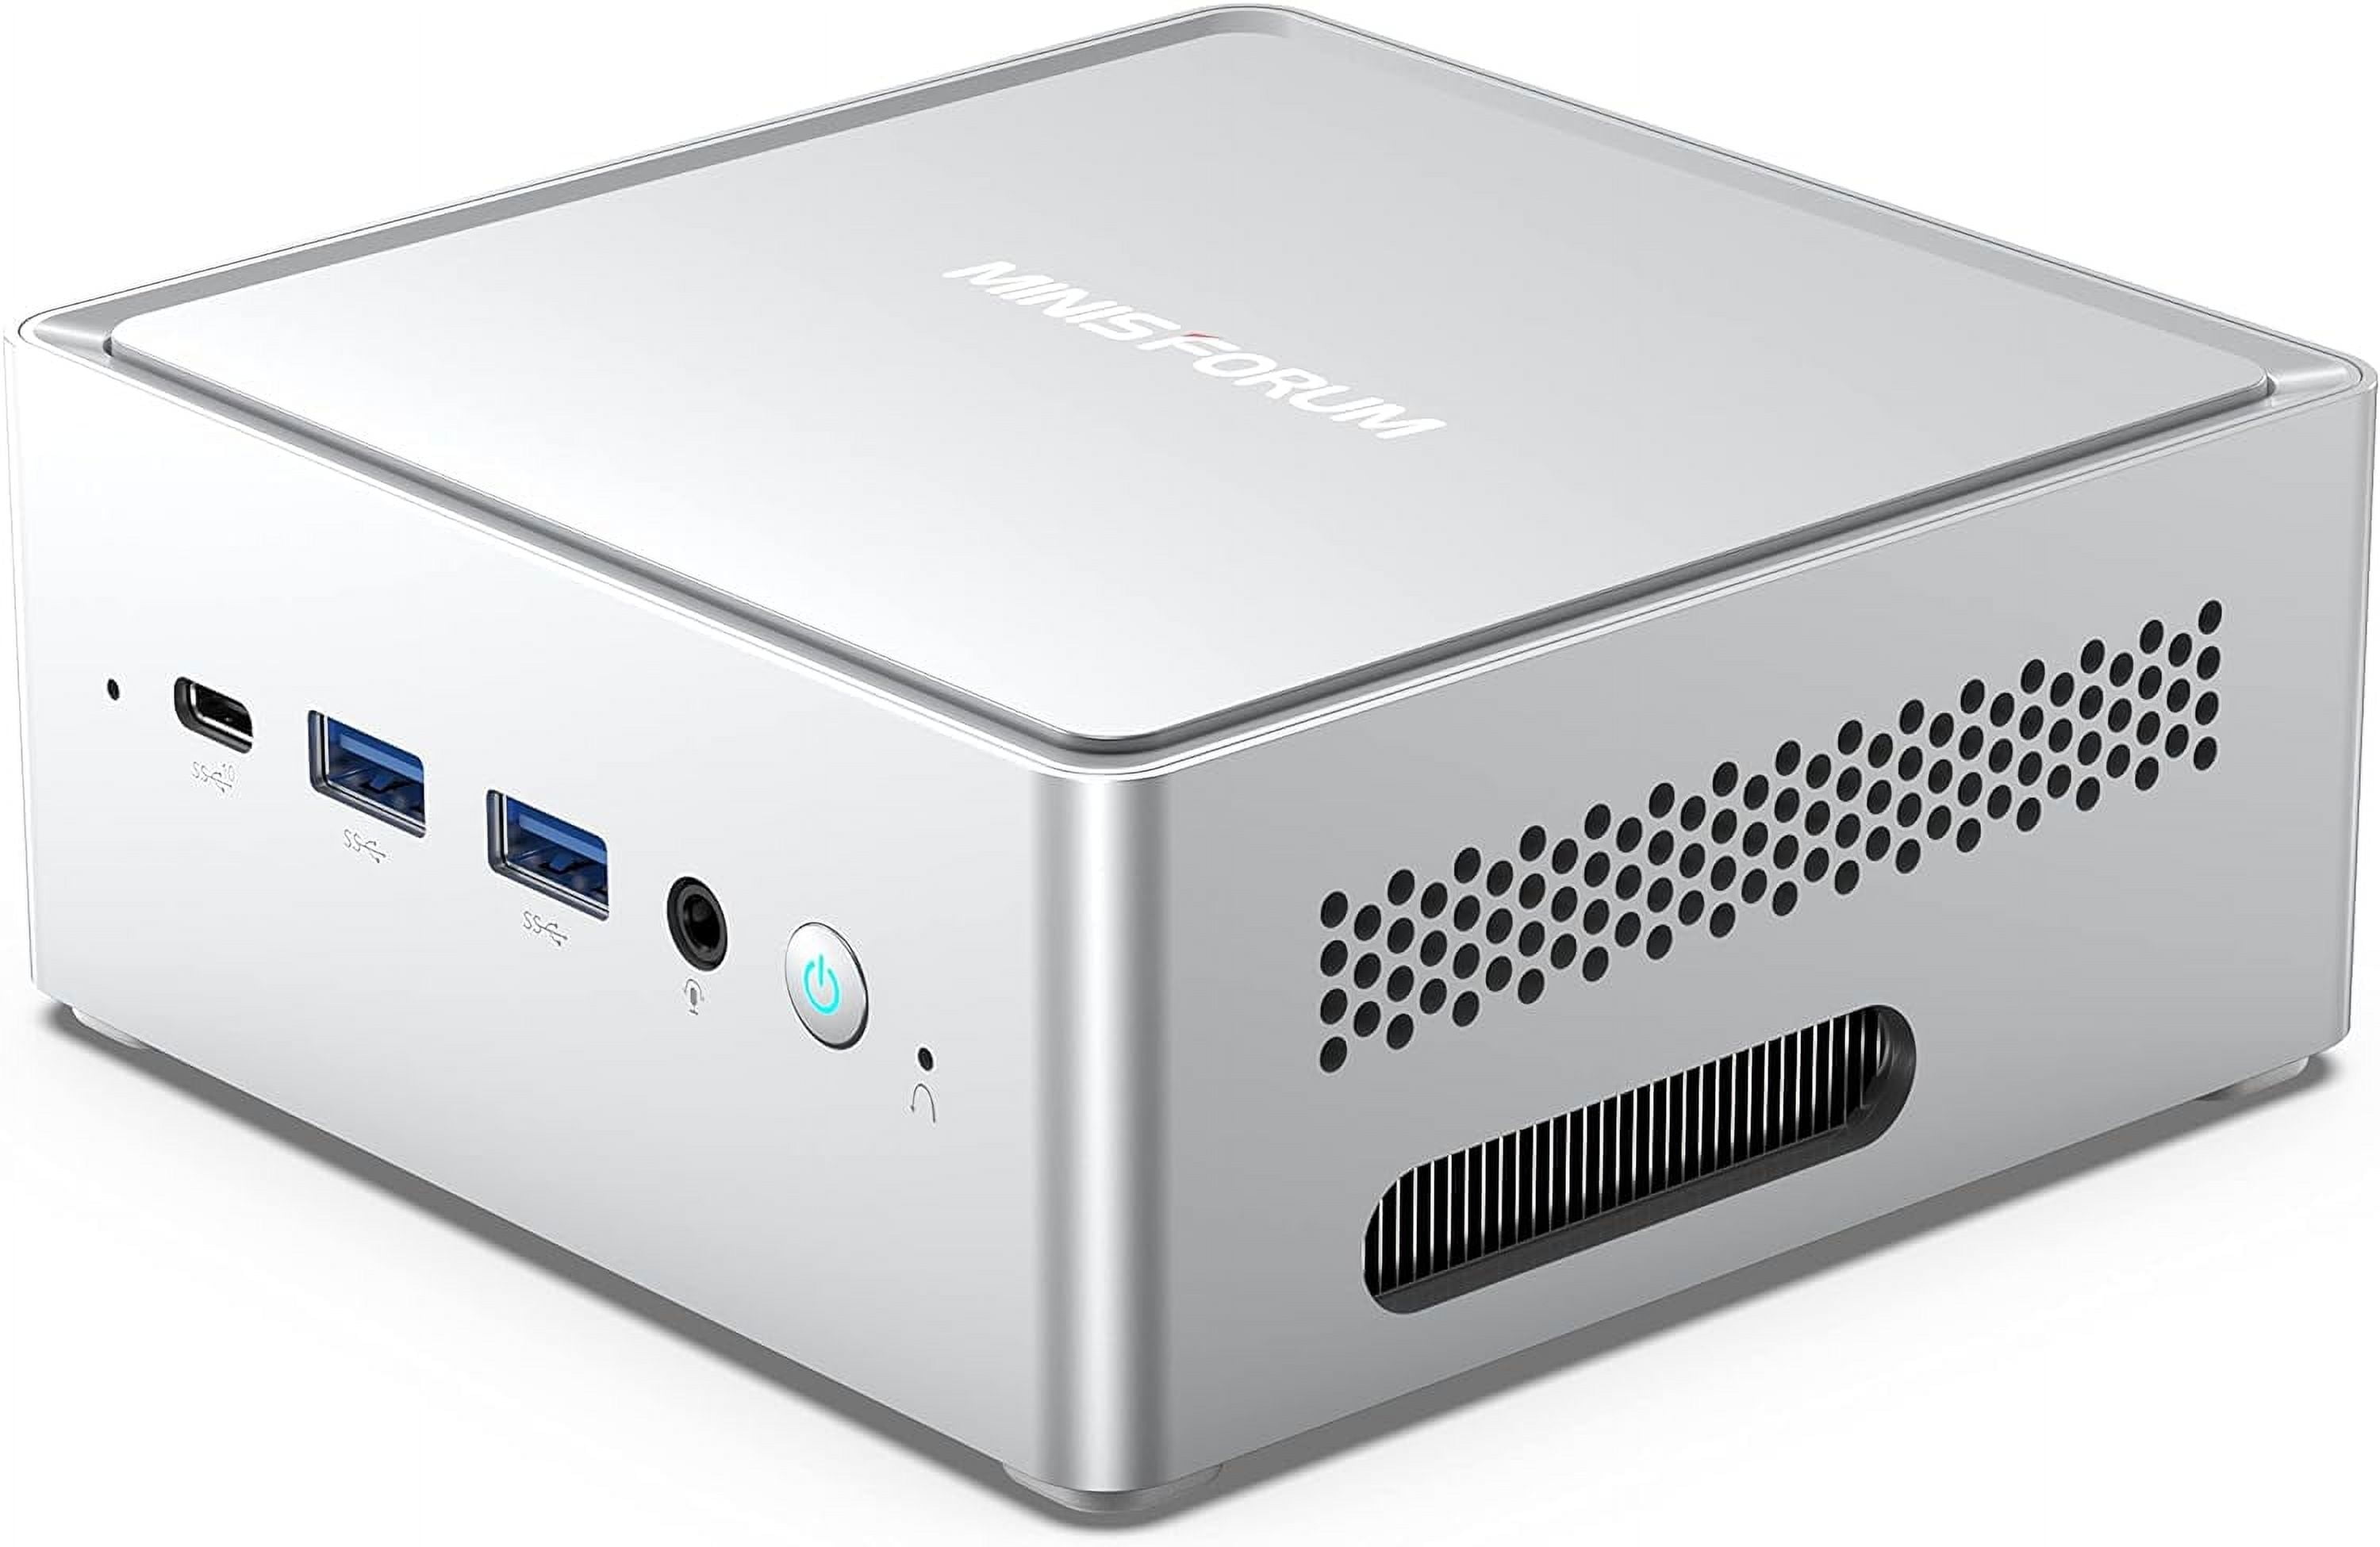 Minisforum's Tiny EM680 Ultra-Mini Desktop PC Launched With AMD Ryzen 7  6800U - Price From $399 US 